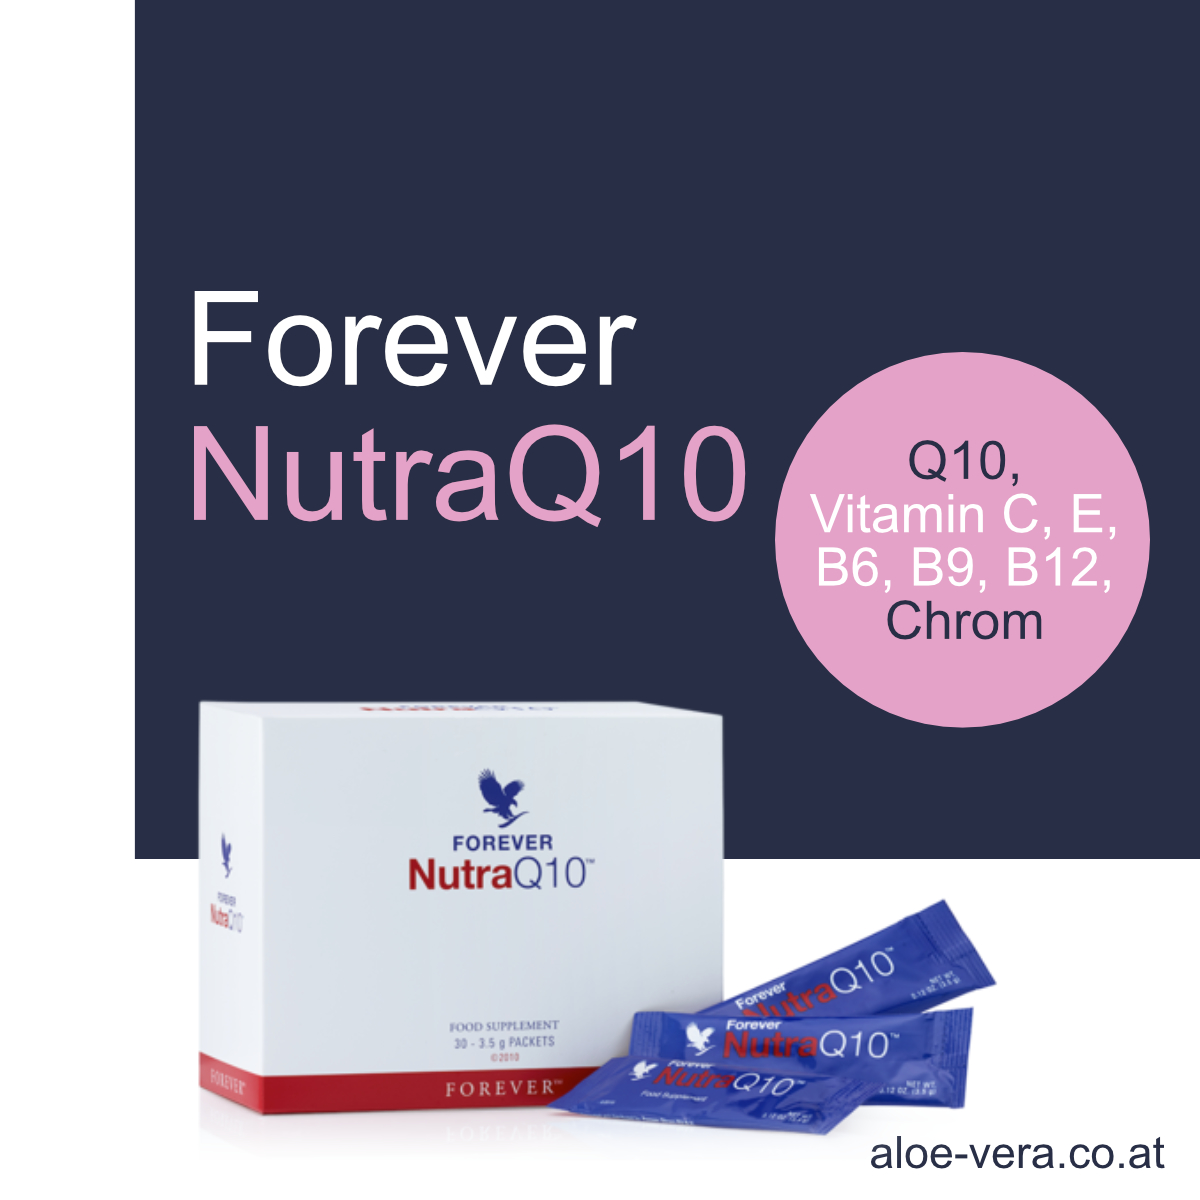 Forever Nutra Q10, Vitamin C, Vitamin E, B-Vitamine, B12, Chrom kaufen